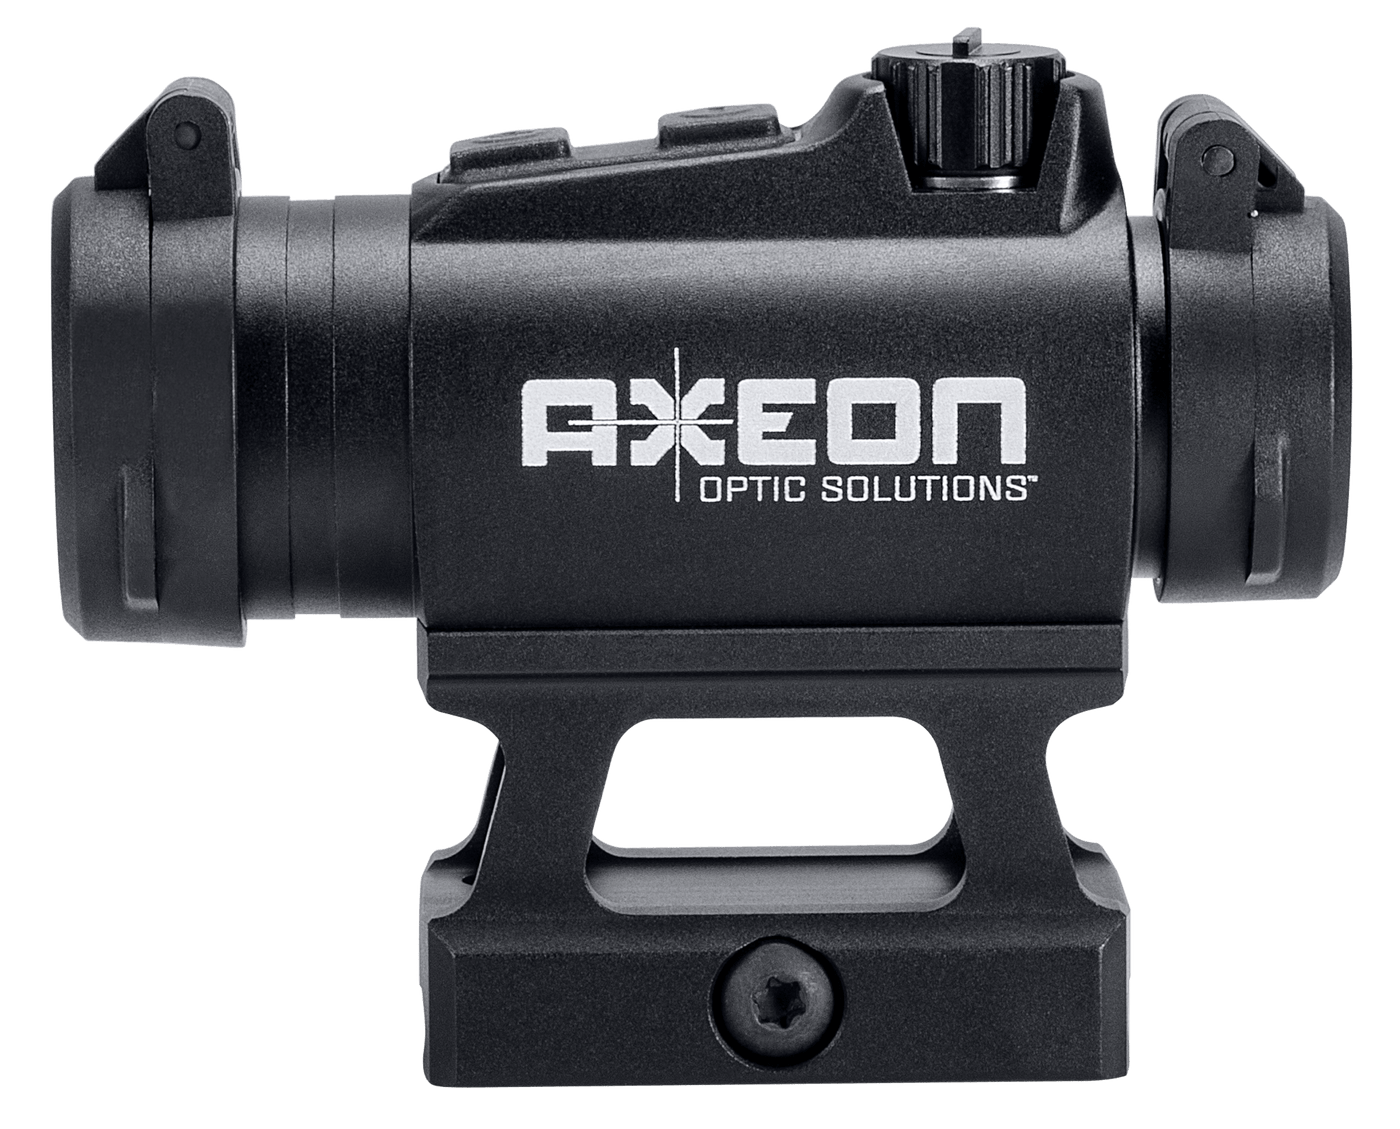 Axeon Axeon Mdsr1, Axeon 2218667 Mdsr1 Micro Dot Sight Red Led Optics